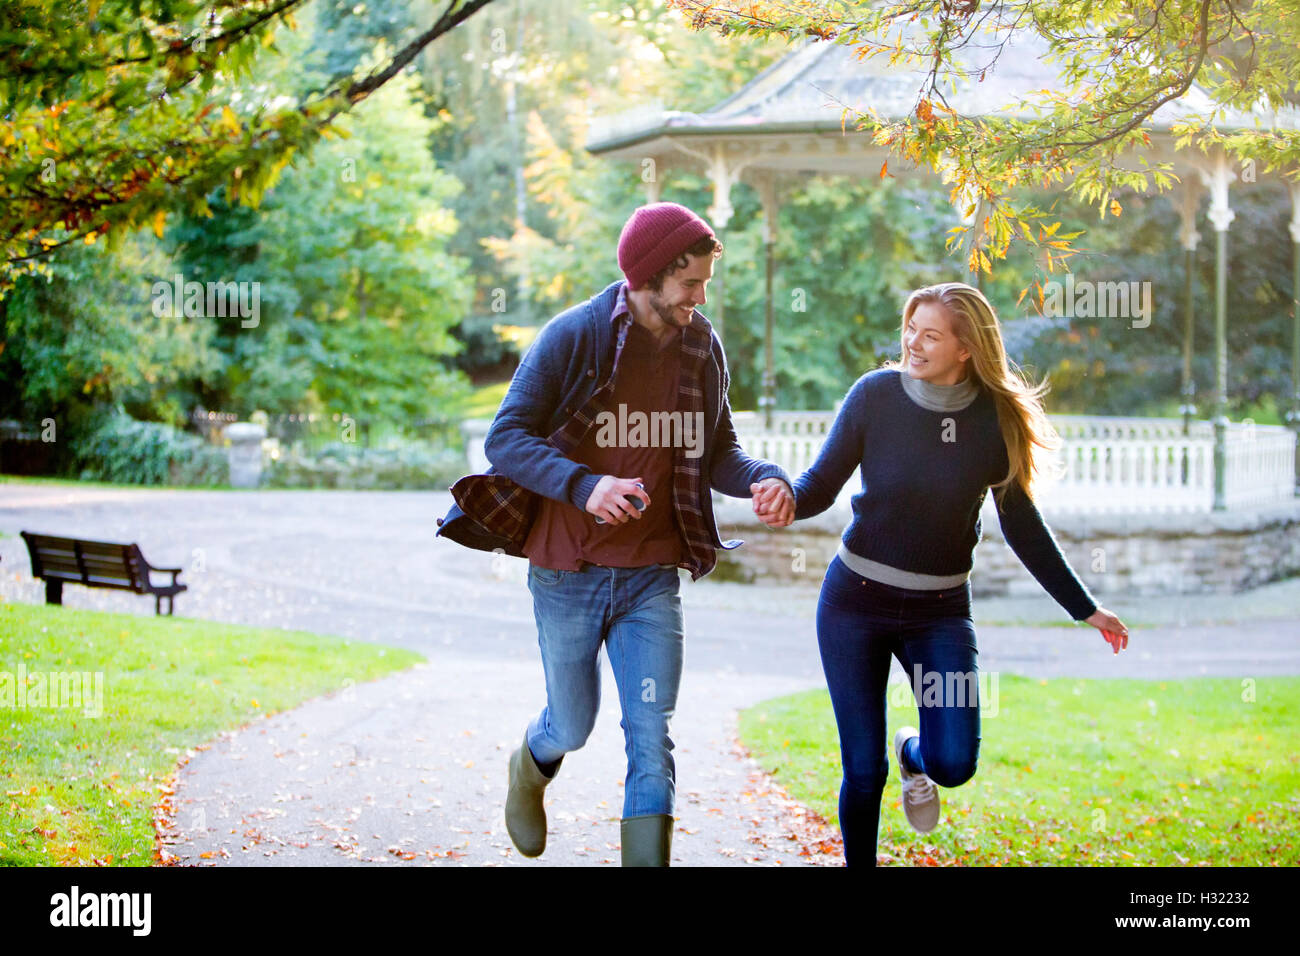 Coppia giovane correndo insieme attraverso un parco in autunno. Foto Stock